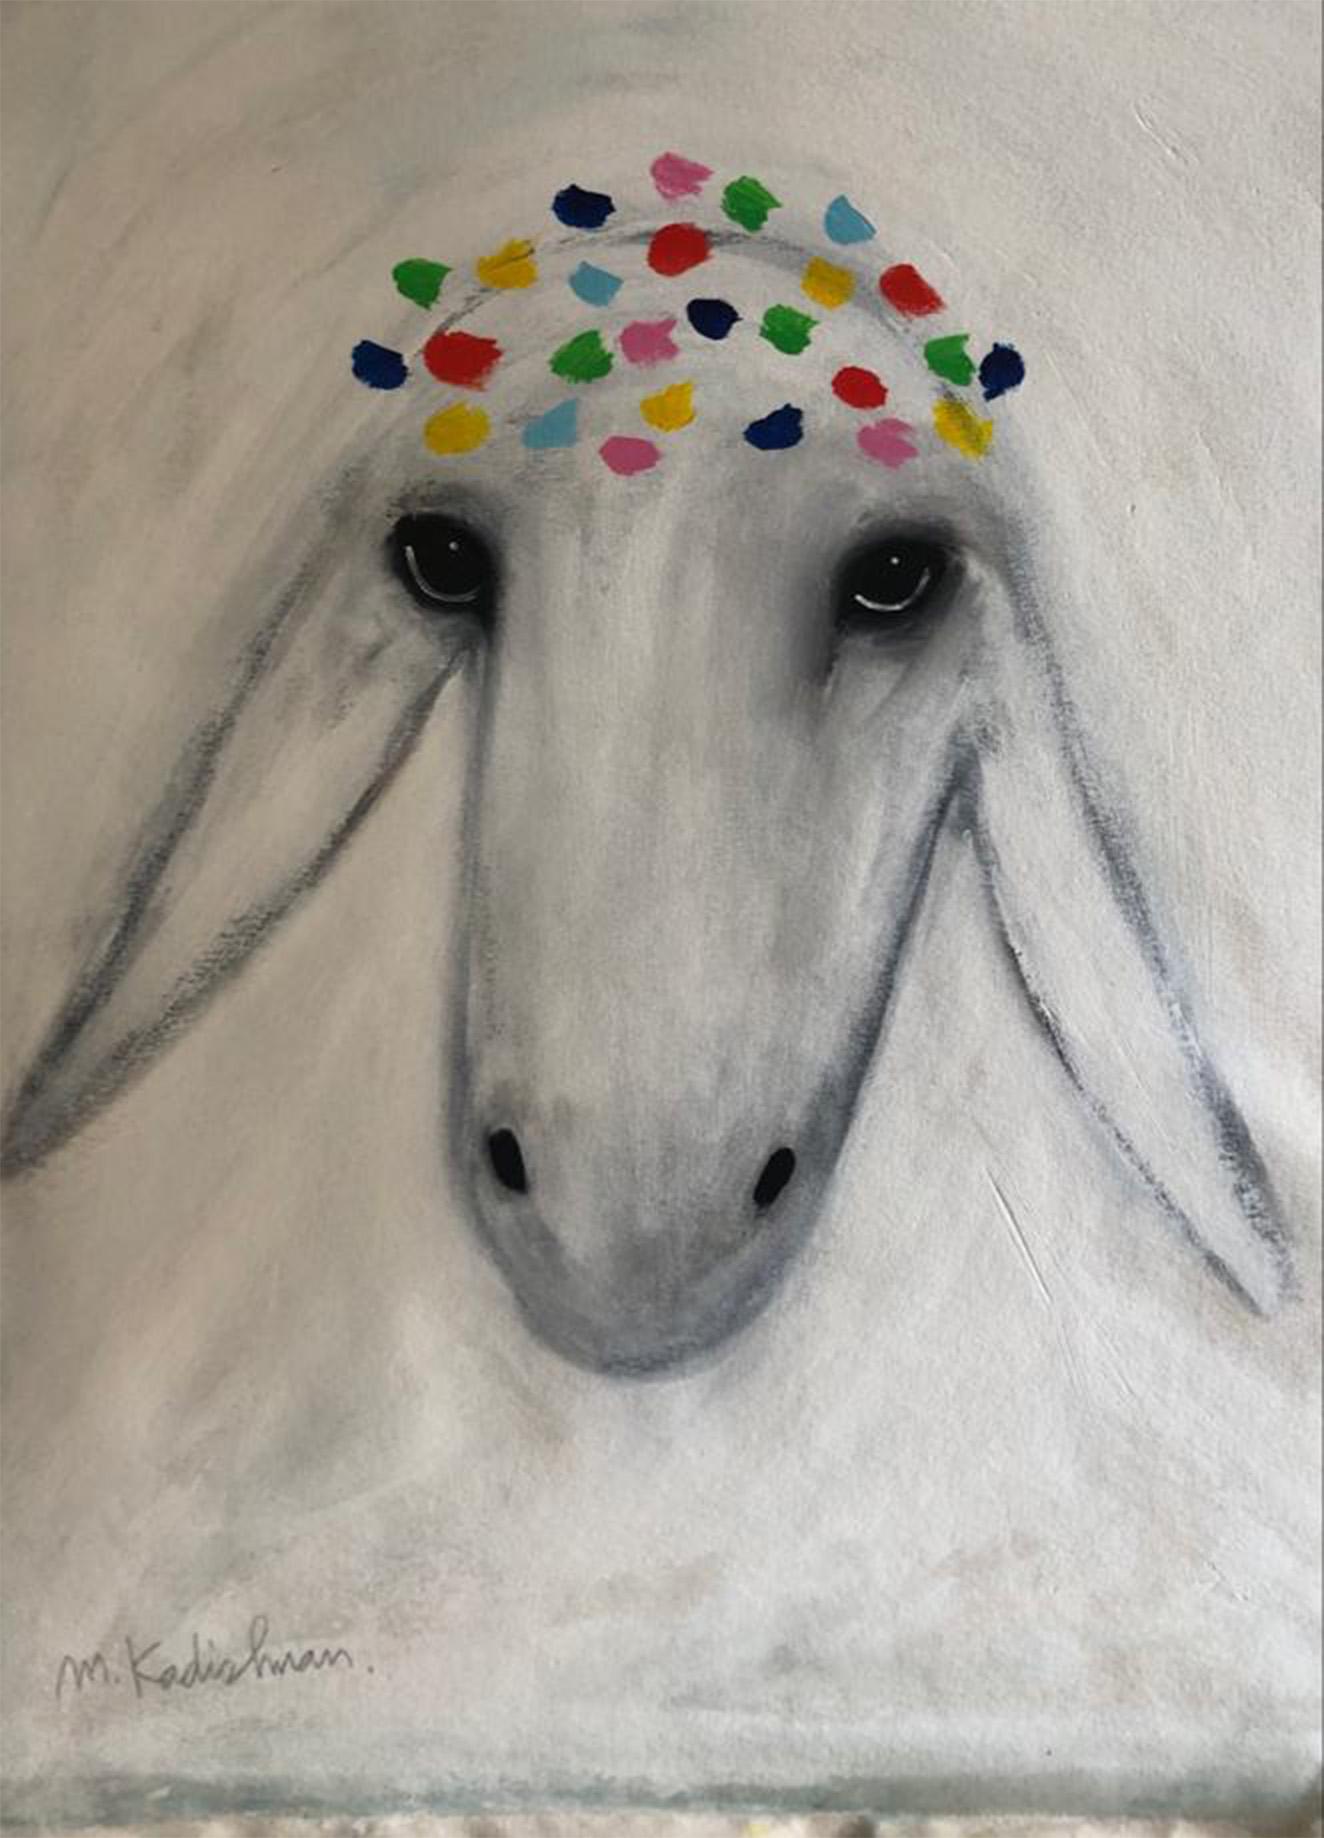 Menashe Kadishman, tête de mouton 35, acrylique sur toile